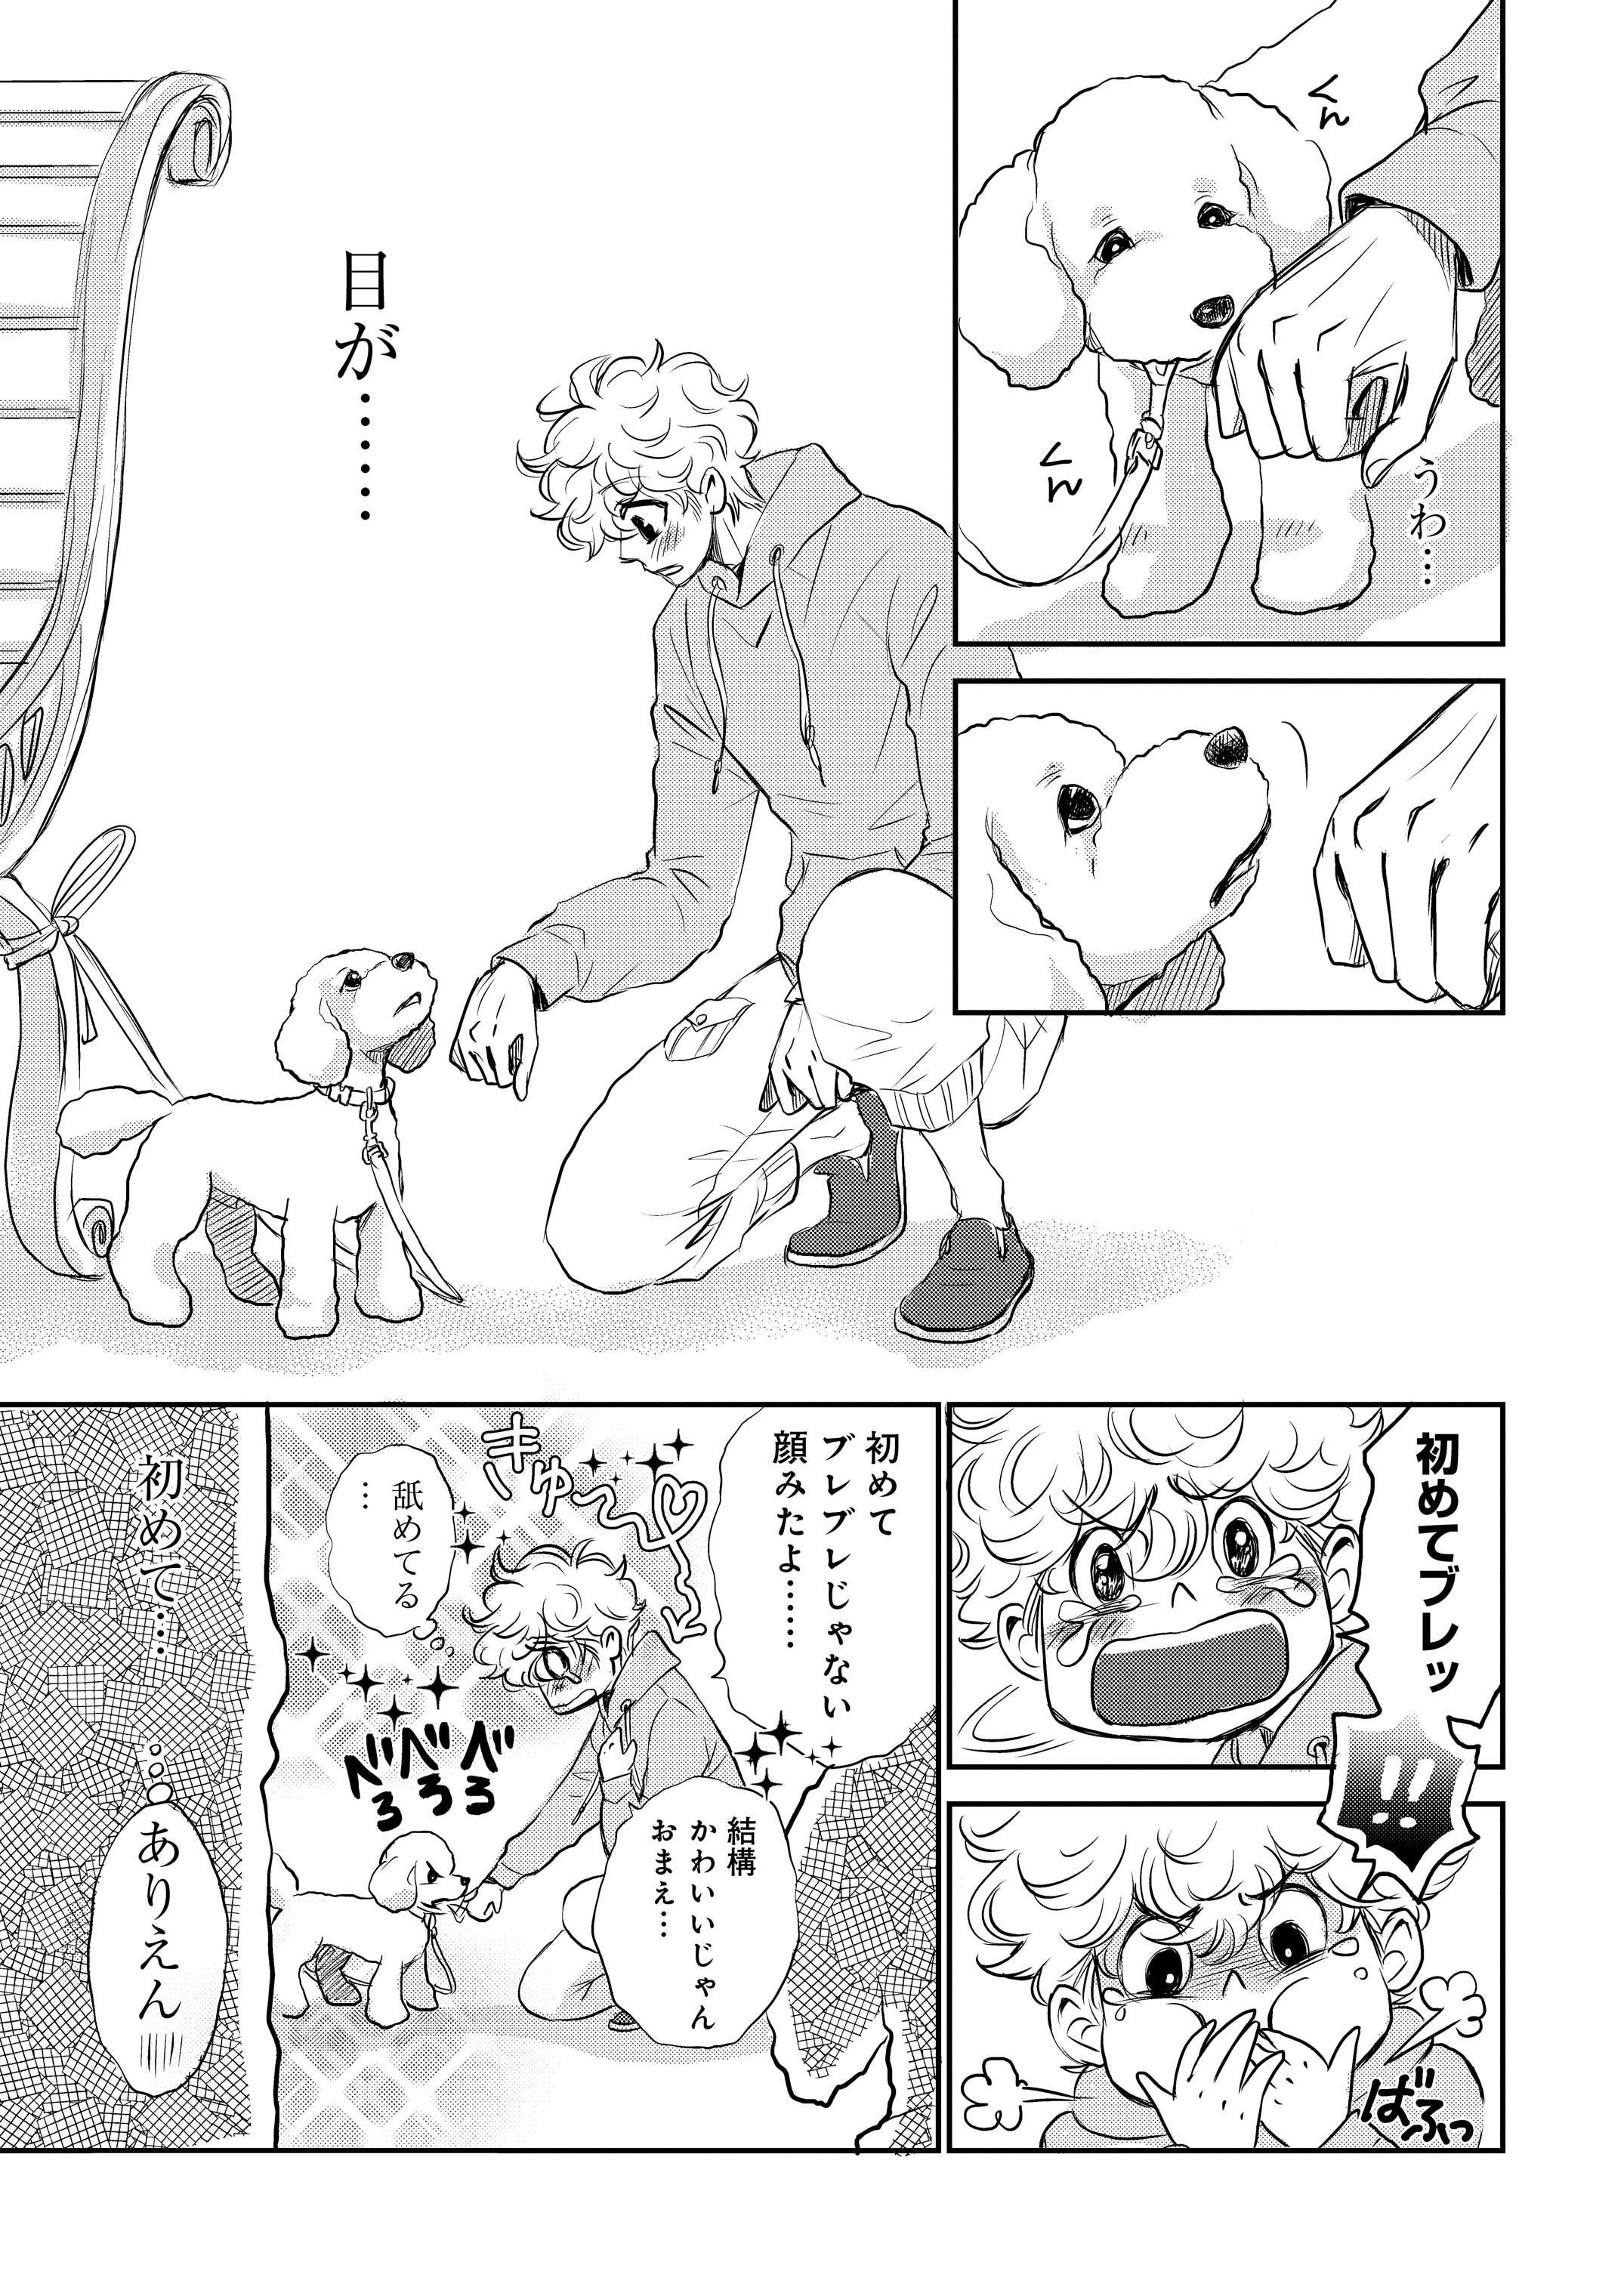 【新連載】『DOG SIGNAL』1話目③　8ページ目